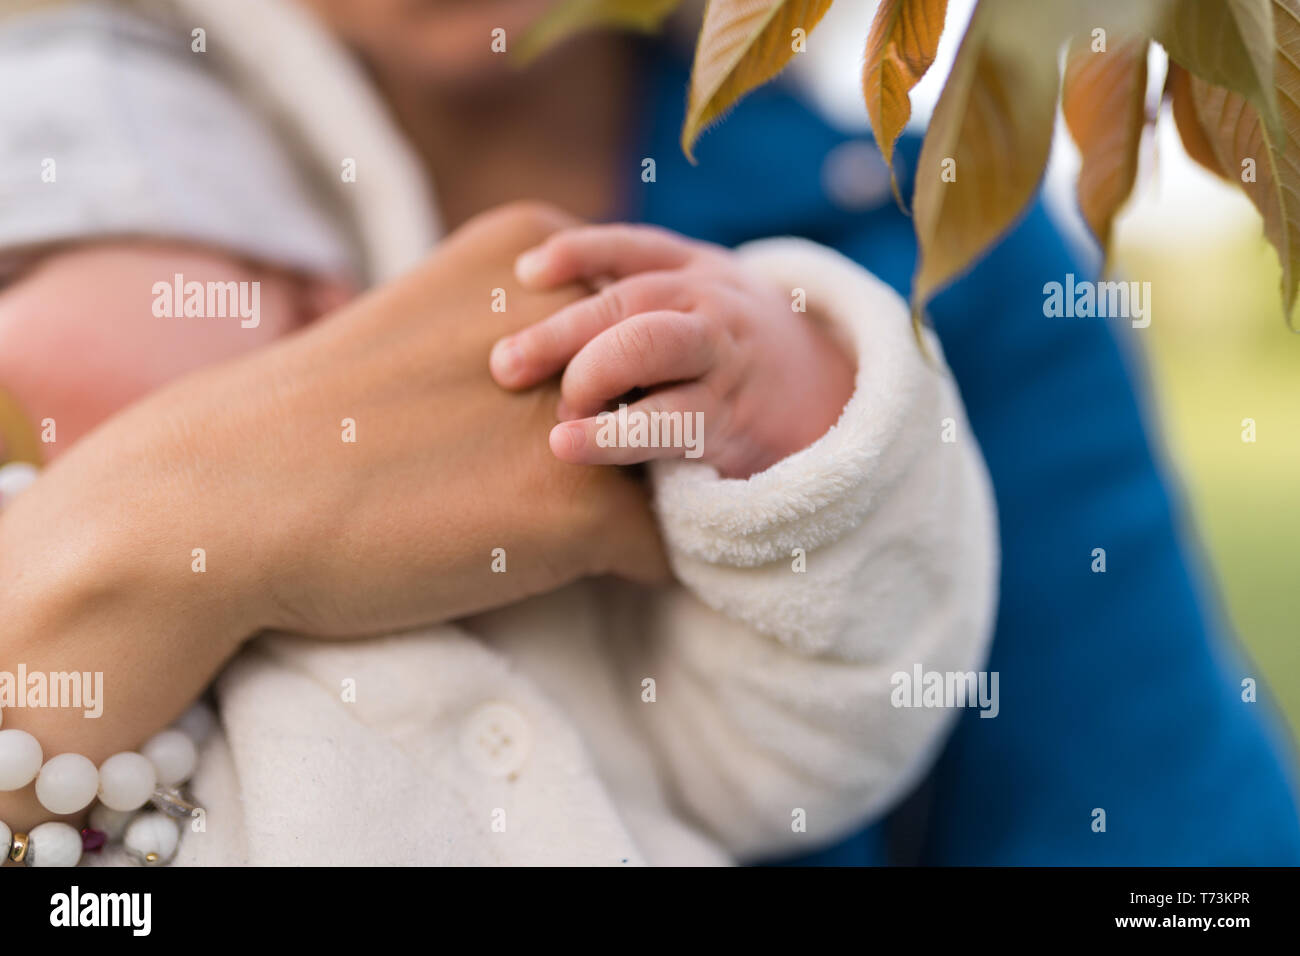 Mani da vicino - giovane madre donna godendo di tempo libero con il suo bambino bambino bambino bambino bambino - bianco caucasico bambino con una mano del genitore visibile - vestito in bianco Foto Stock